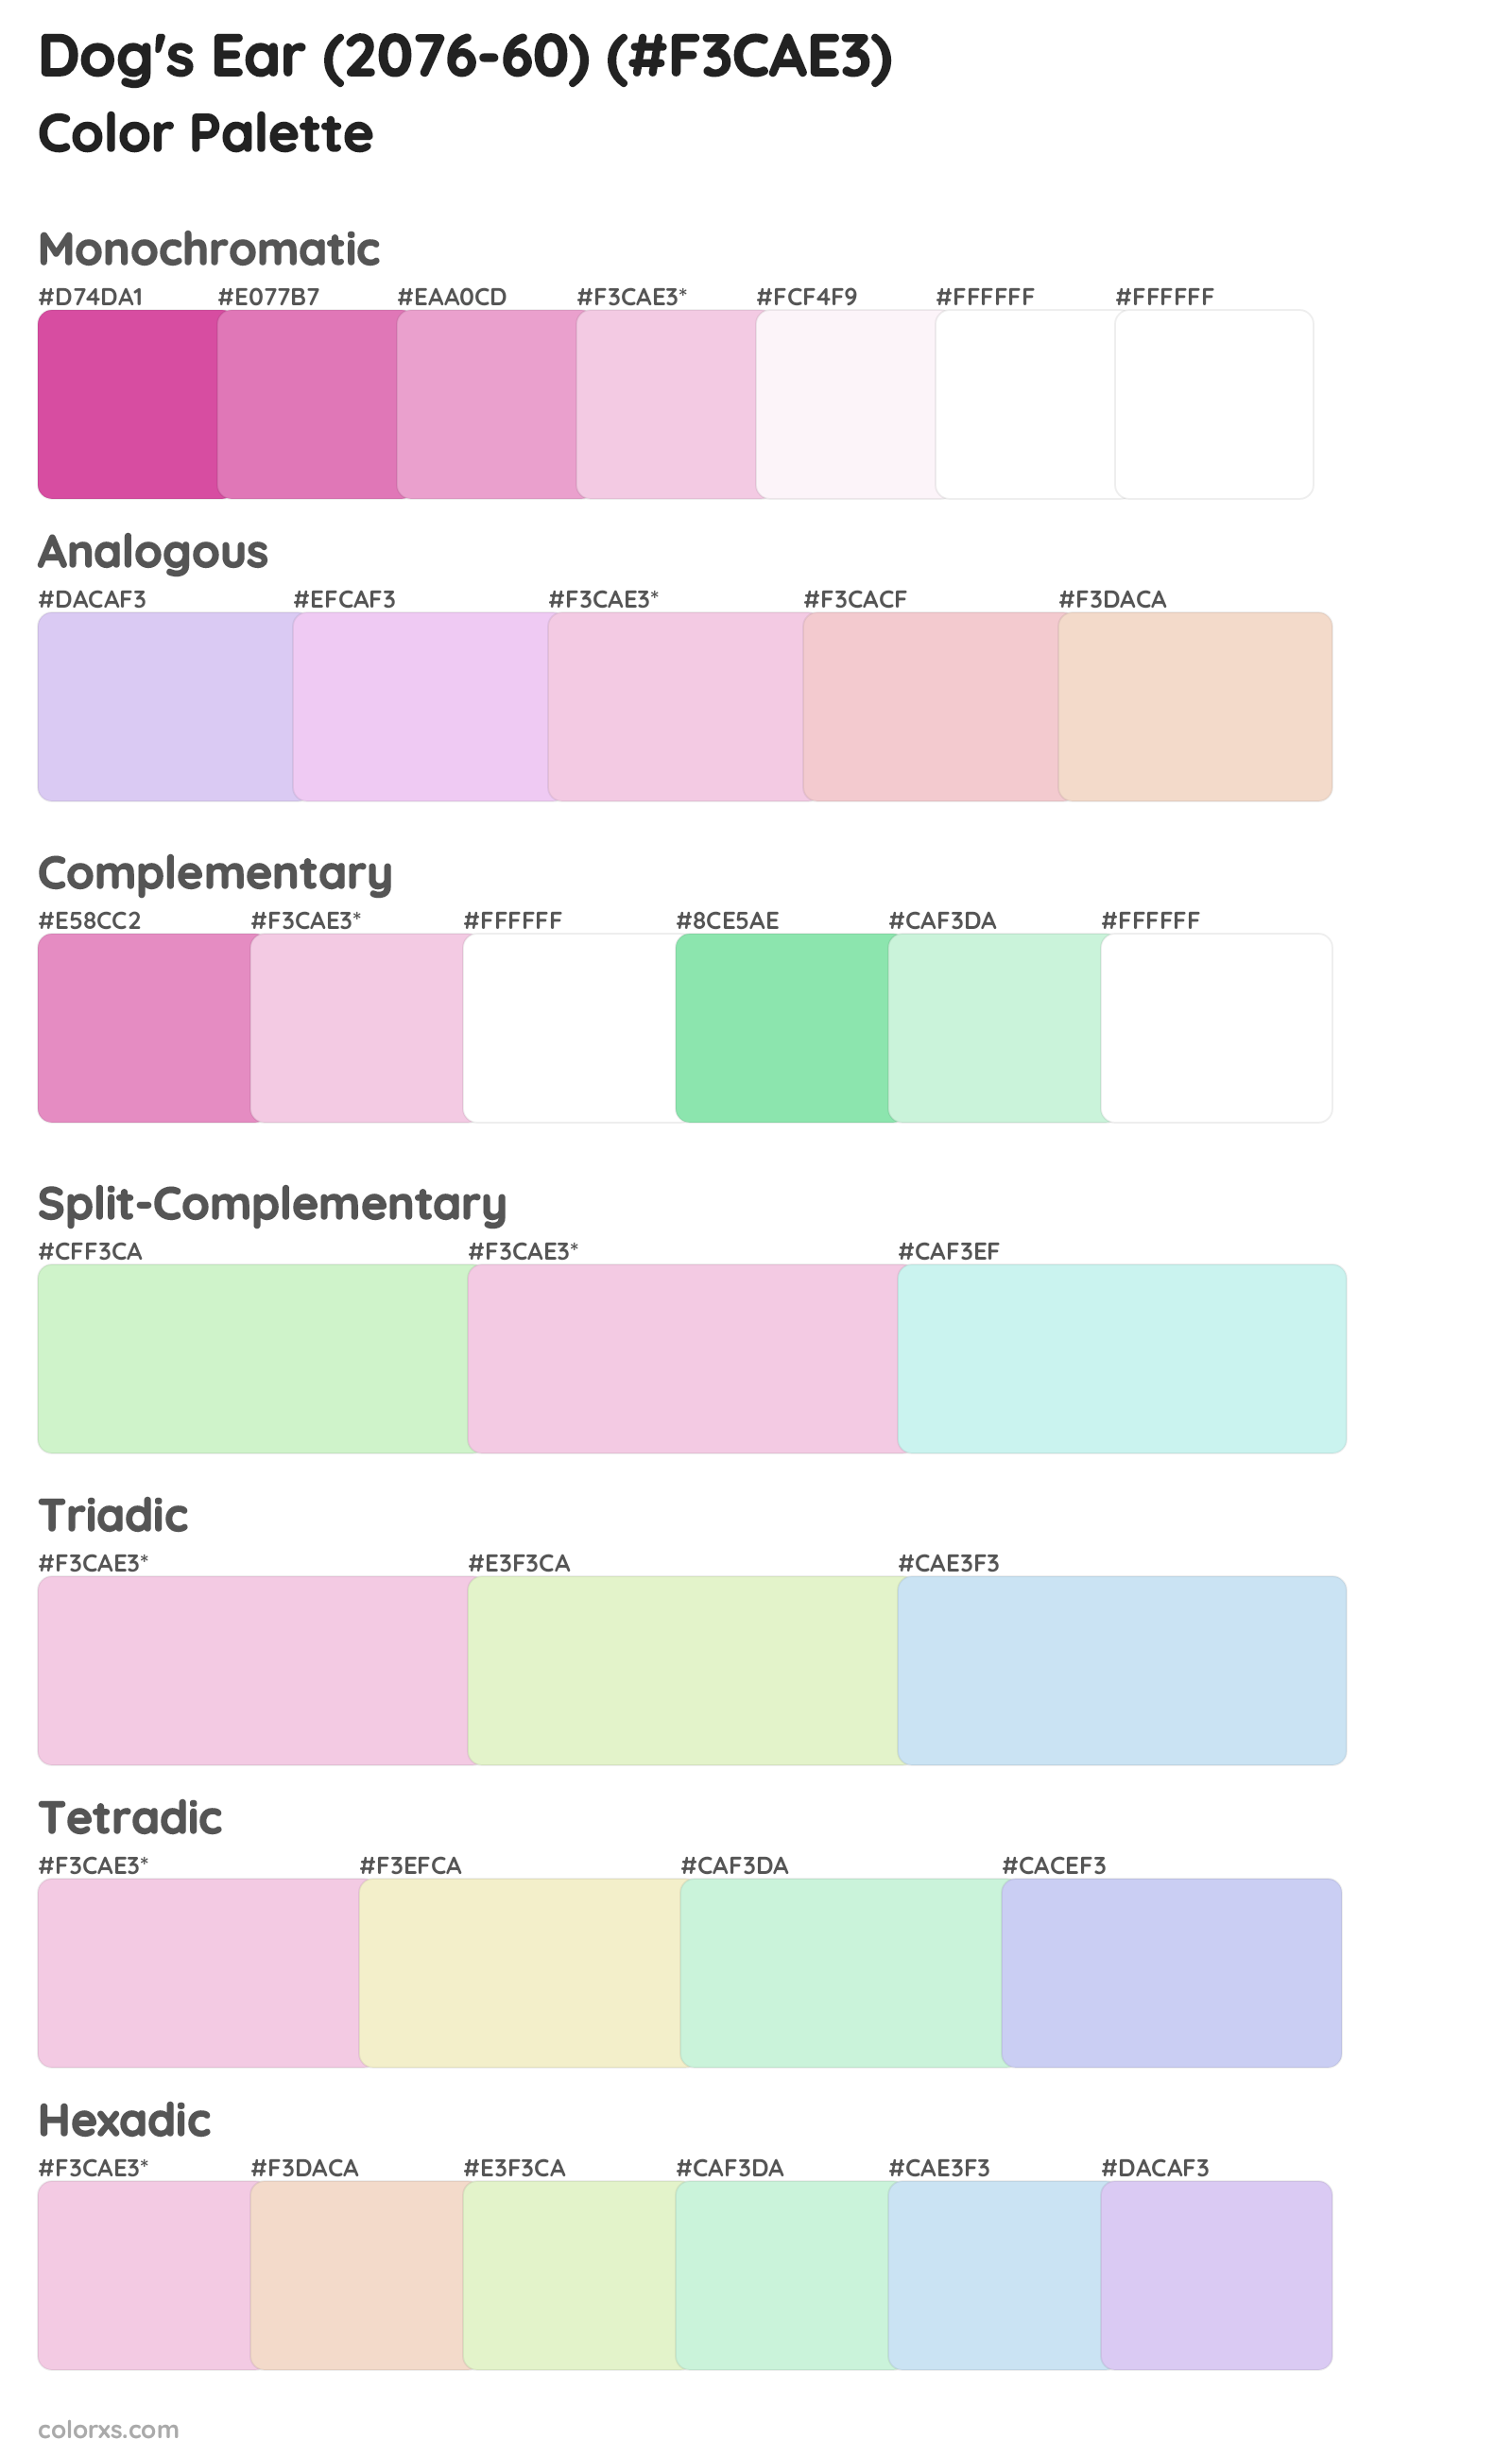 Dog's Ear (2076-60) Color Scheme Palettes